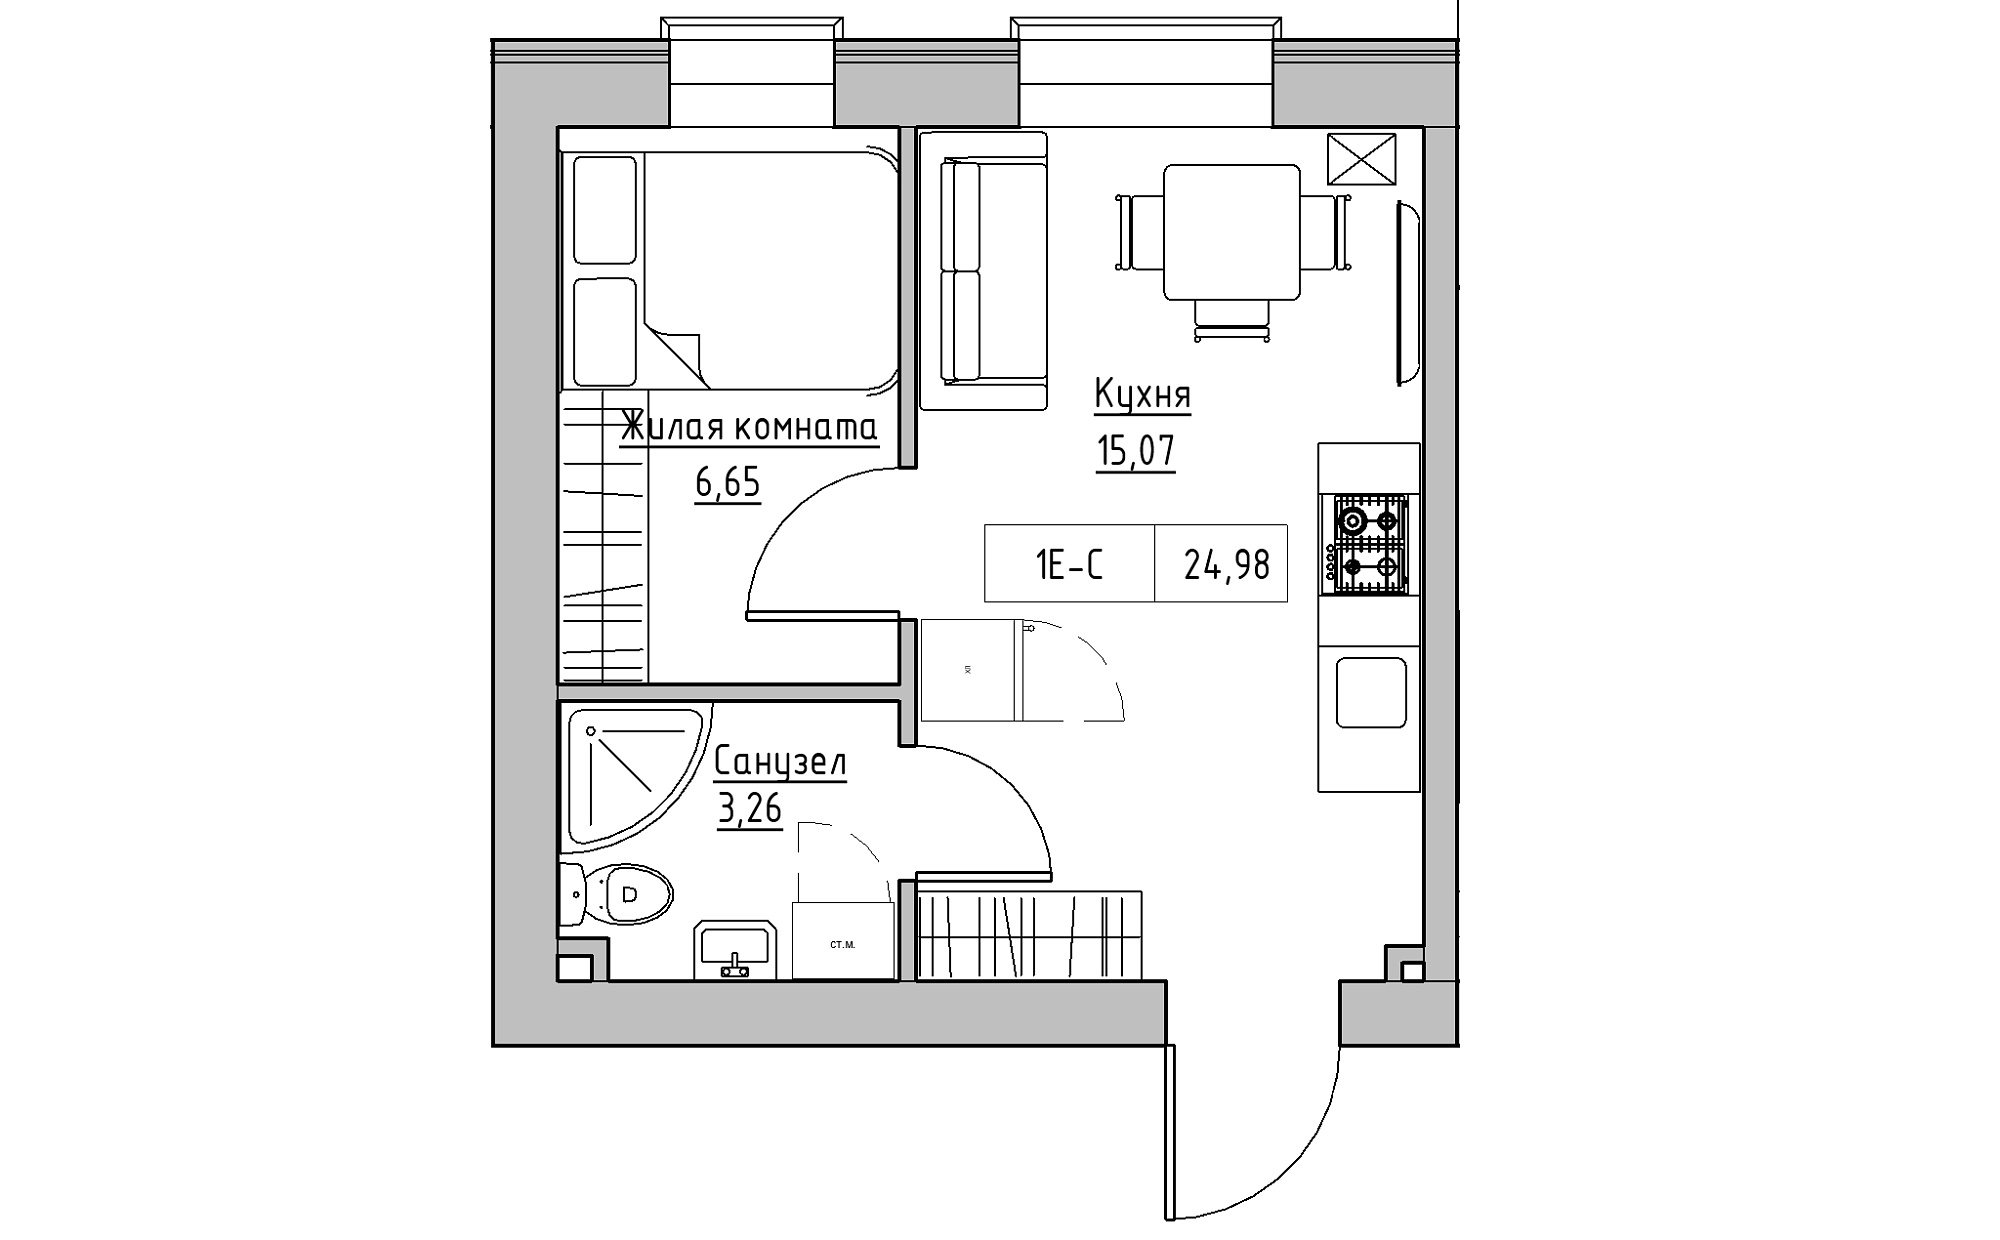 Планировка 1-к квартира площей 24.98м2, KS-022-04/0004.